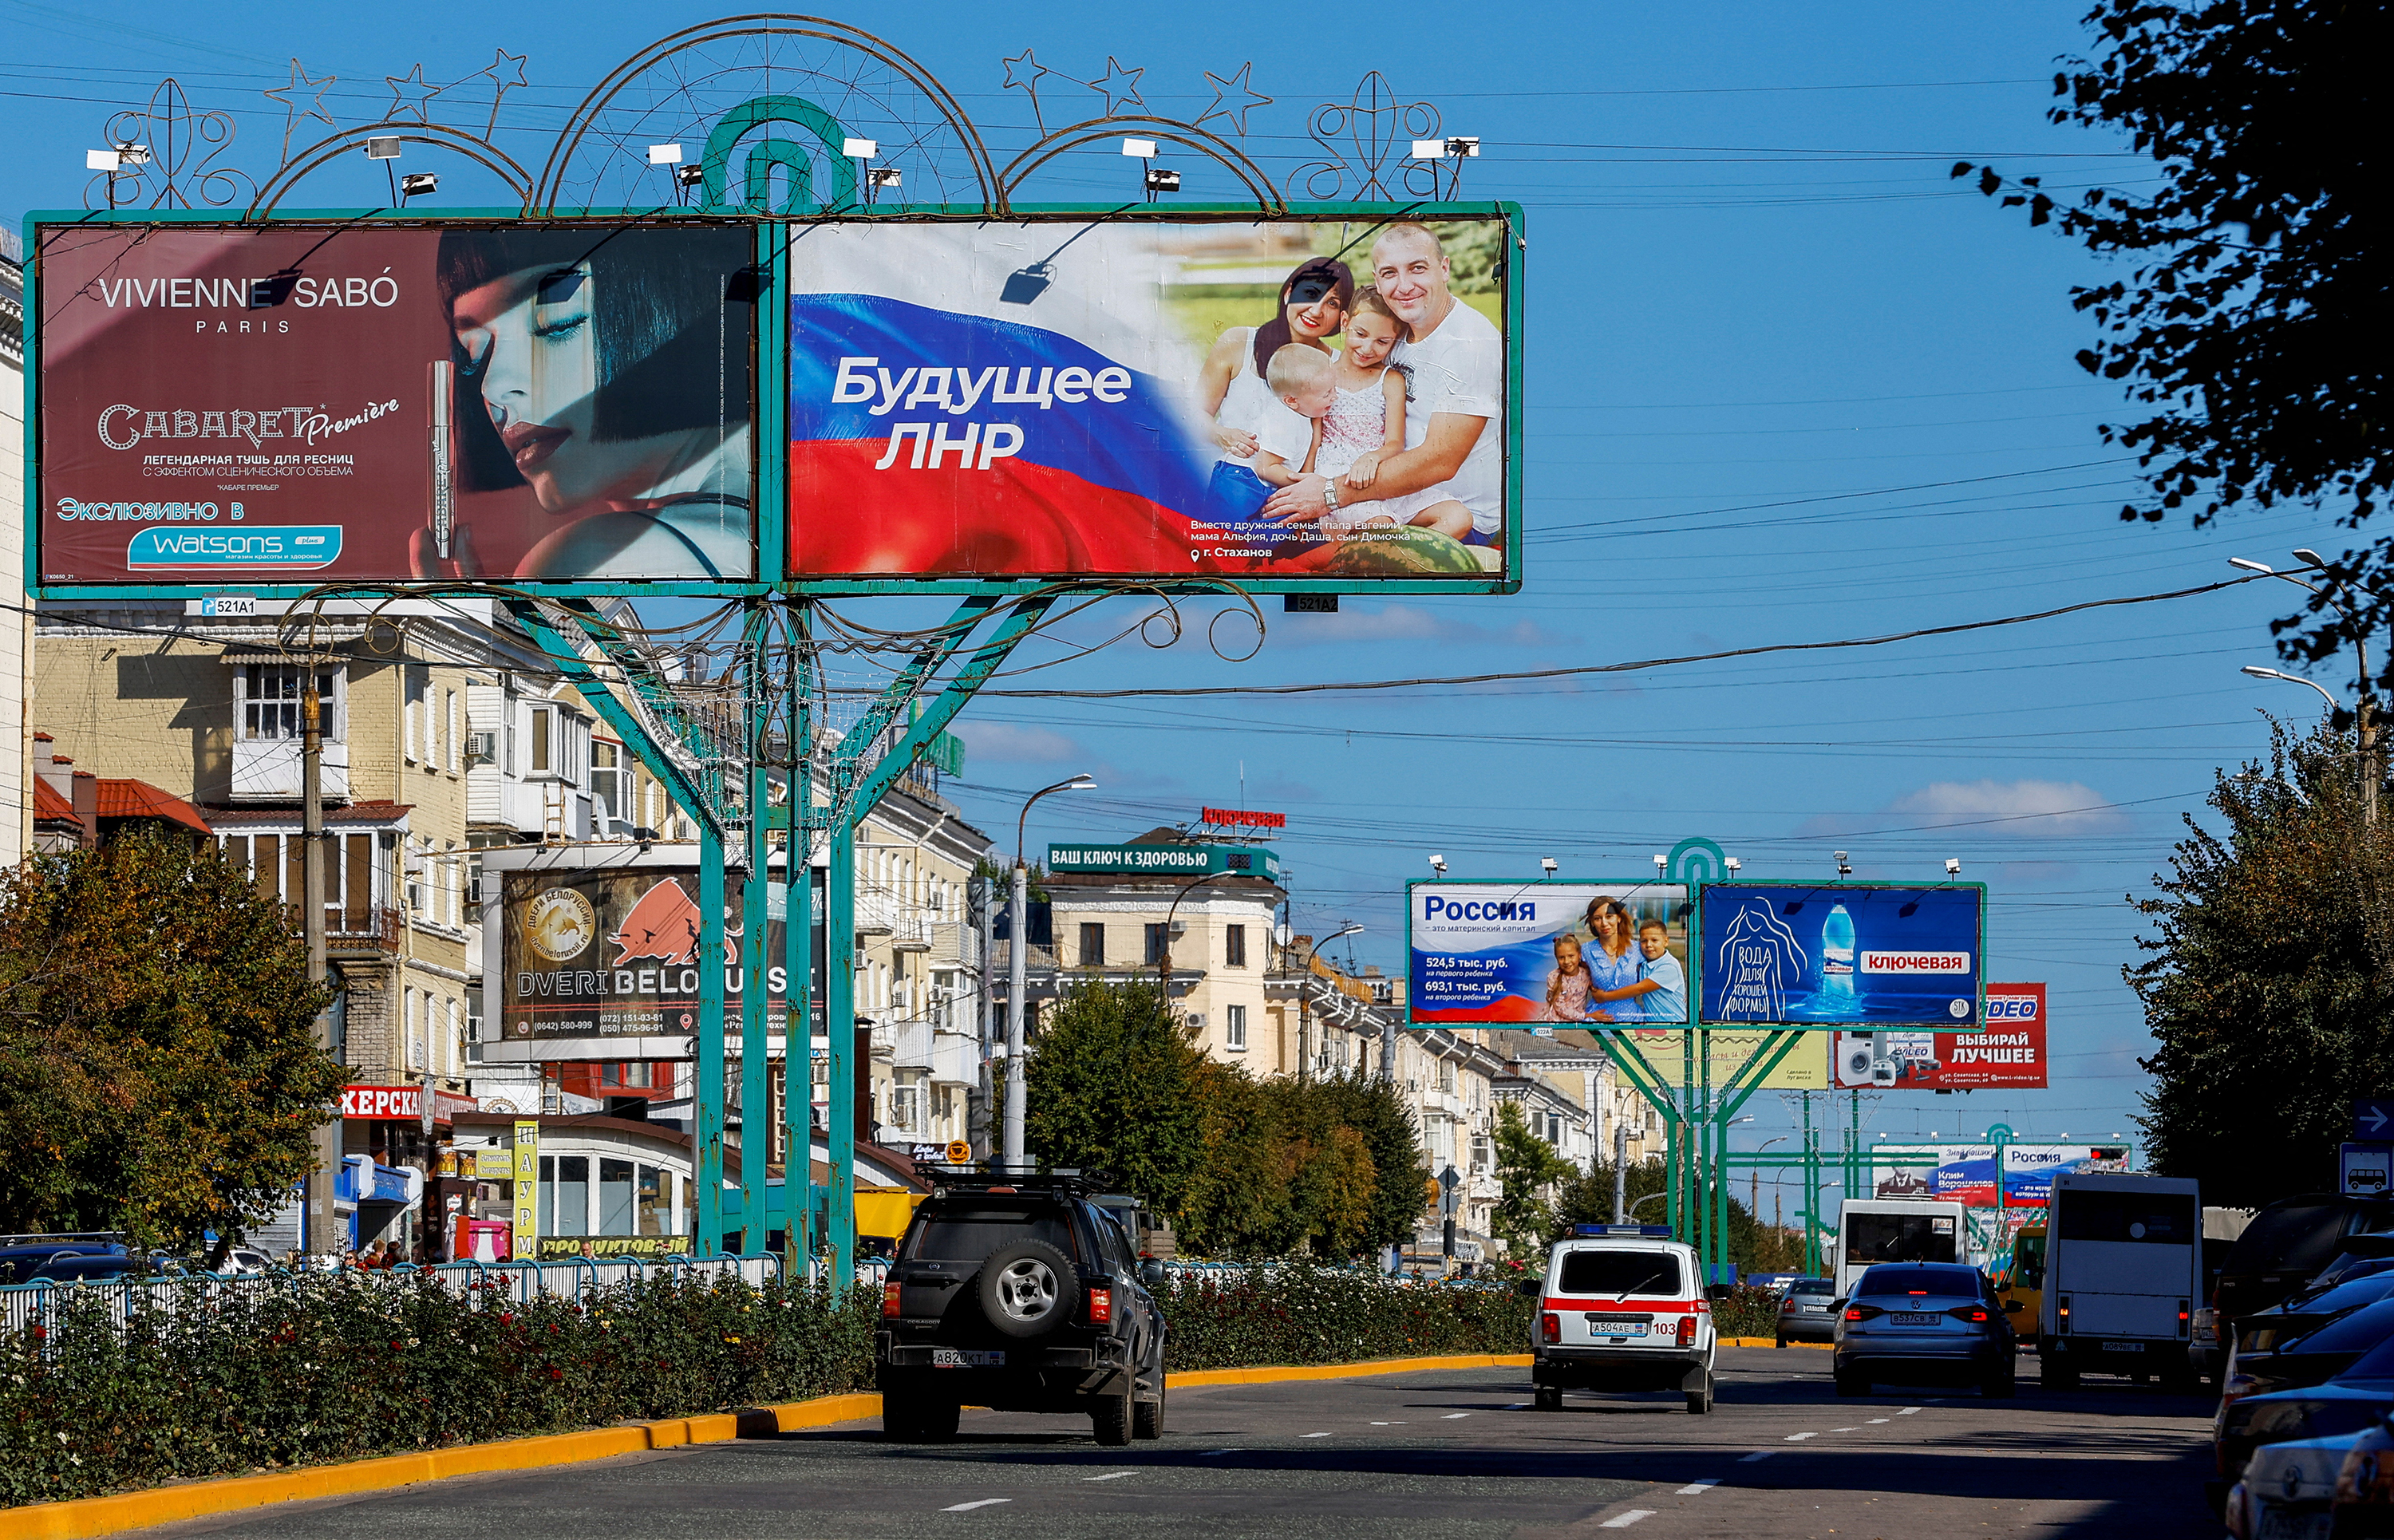 9月20日、ウクライナのルハーンシクで、ロシアとウクライナの紛争中の通りで、親ロシアのスローガンを表示するパネルを含む広告板を通り過ぎる車両。